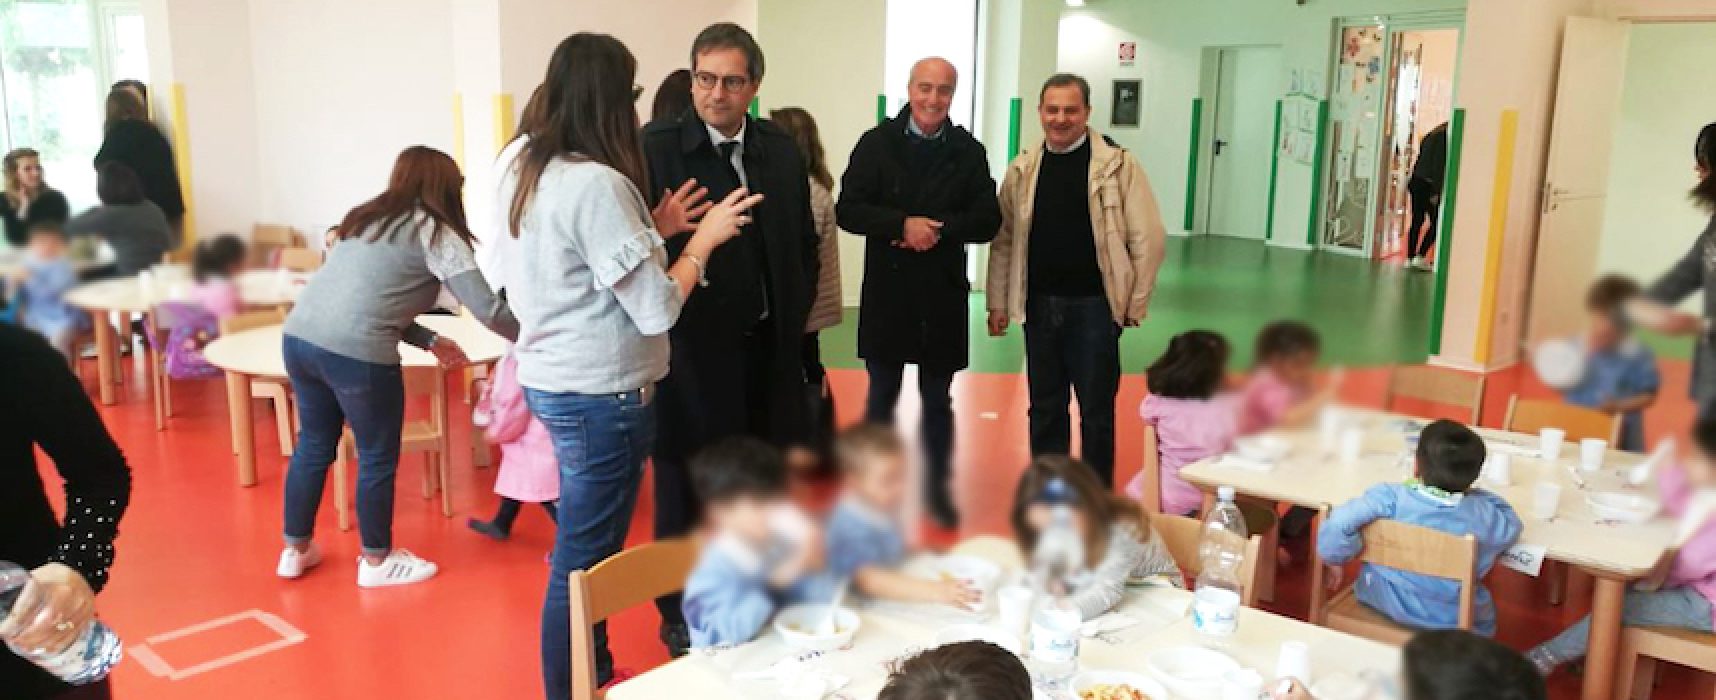 Scuola “Sandro Pertini”, sopralluogo del sindaco Angarano per verificare servizio mensa